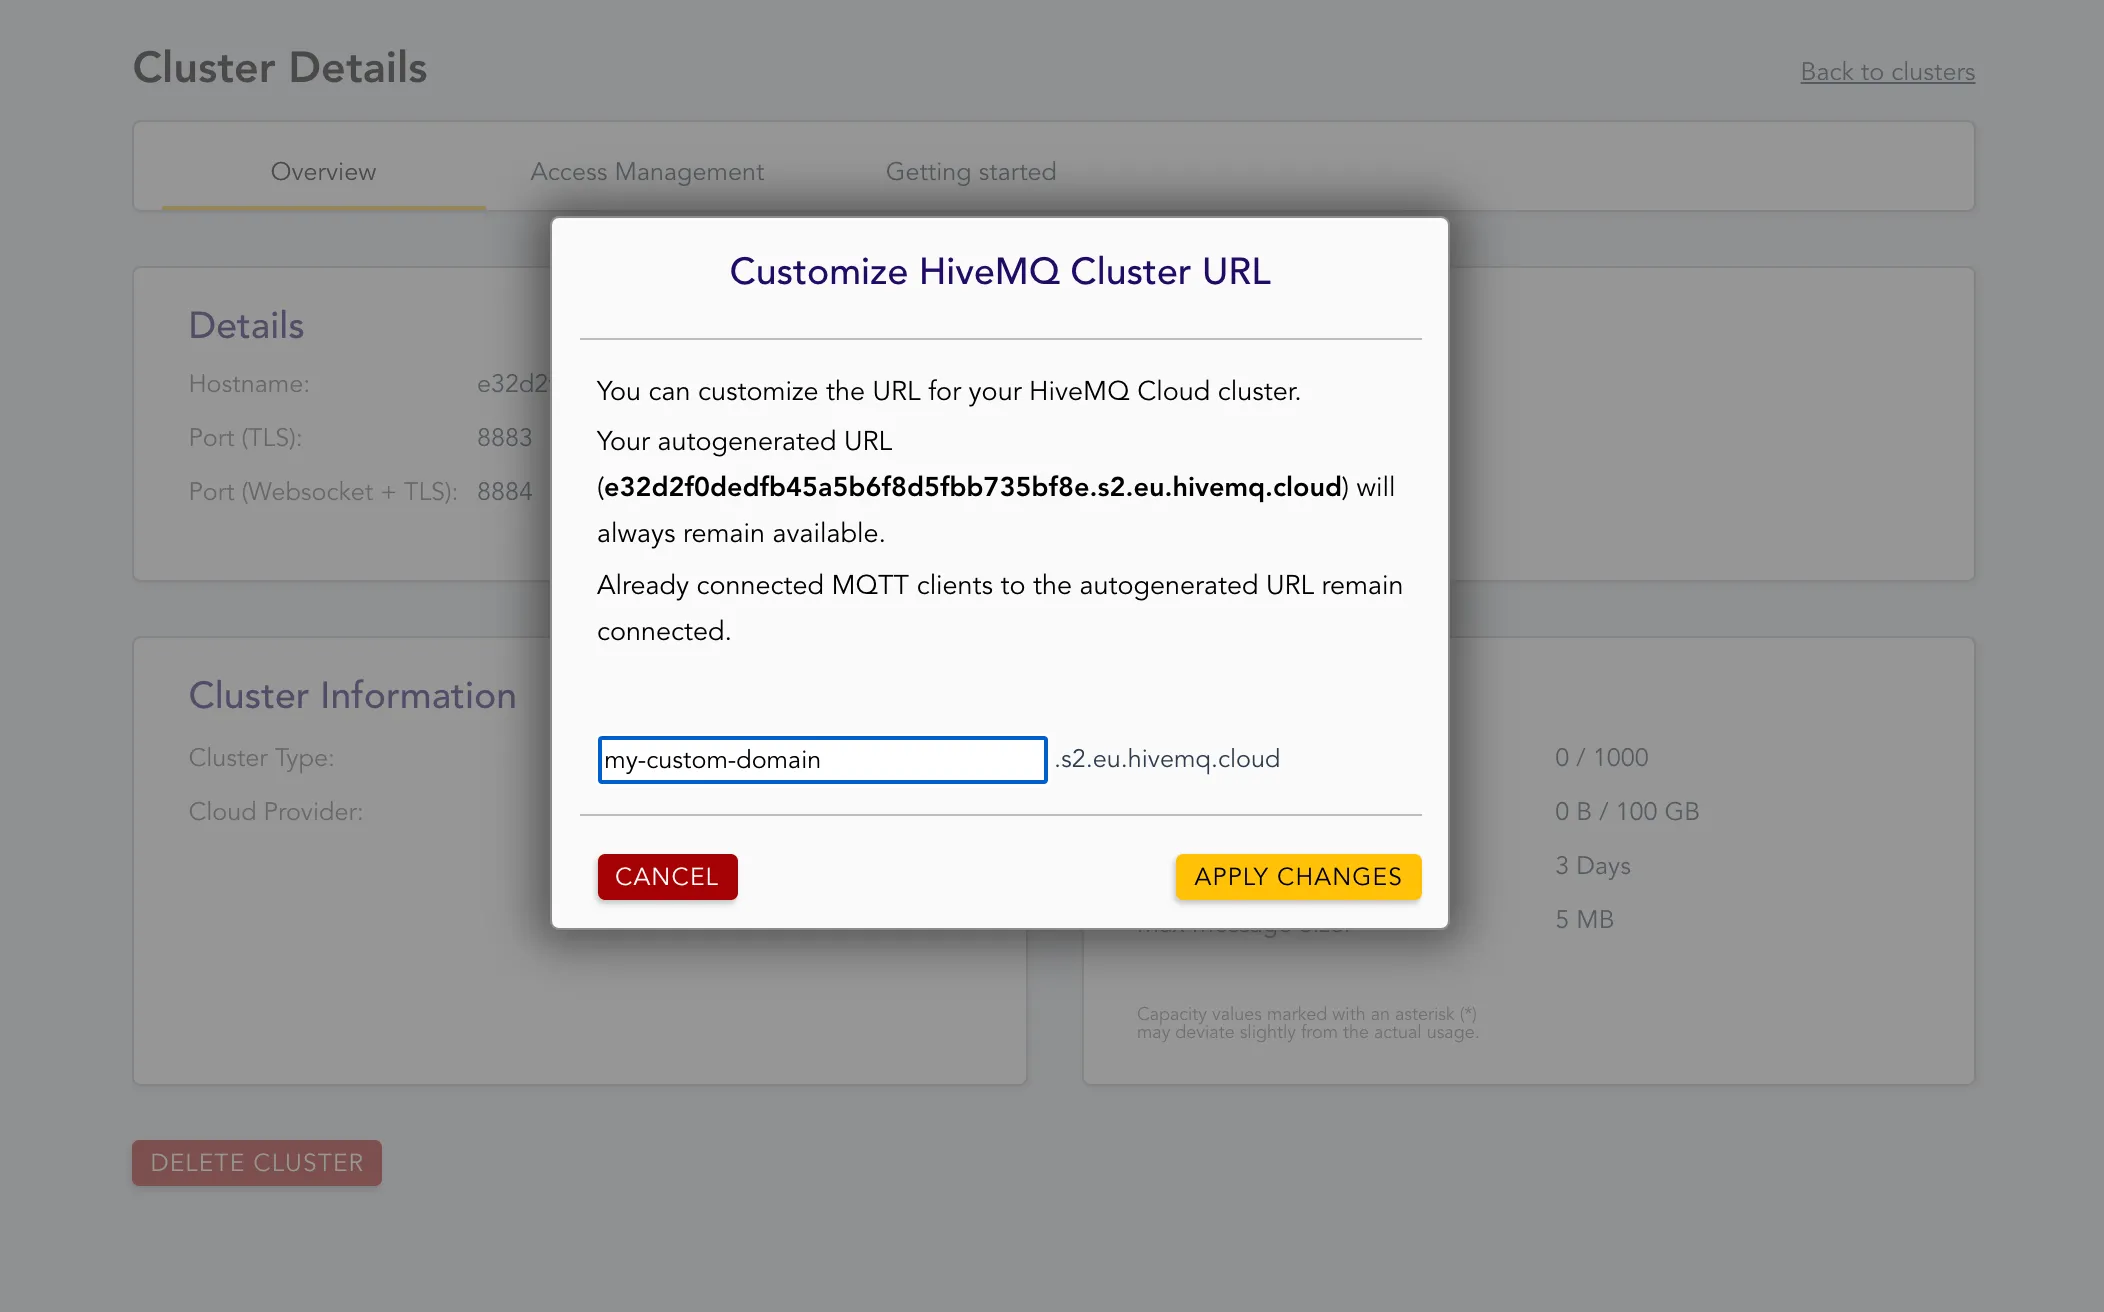 Customize HiveMQ Cluster URL